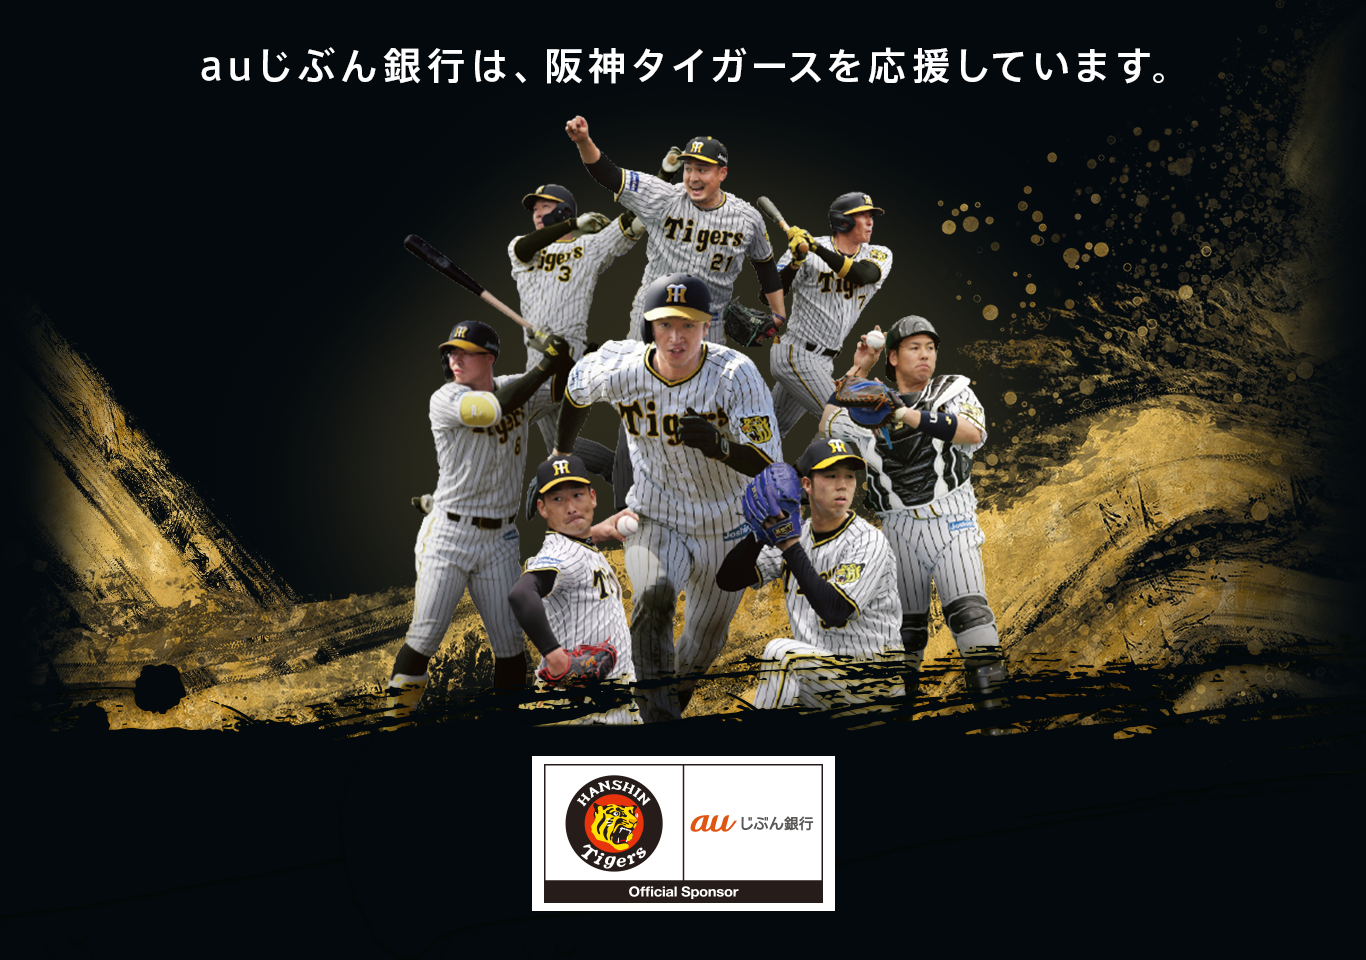 auじぶん銀行は、阪神タイガースを応援しています。